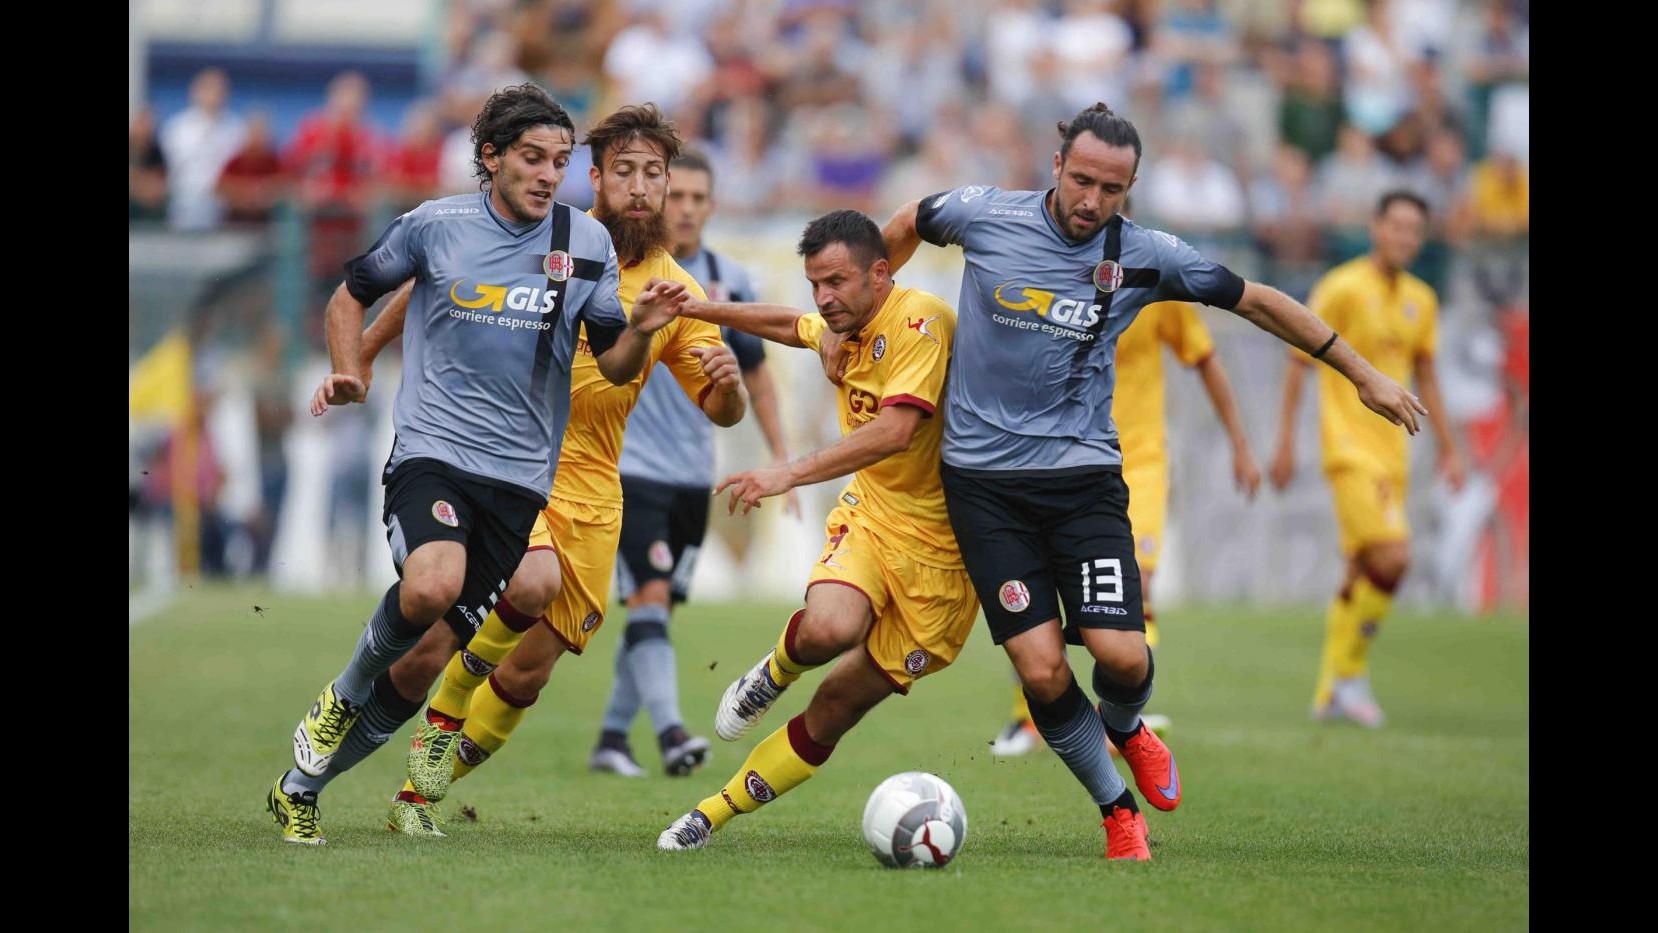 Lega Pro, Alessandria-Livorno finisce 3-1